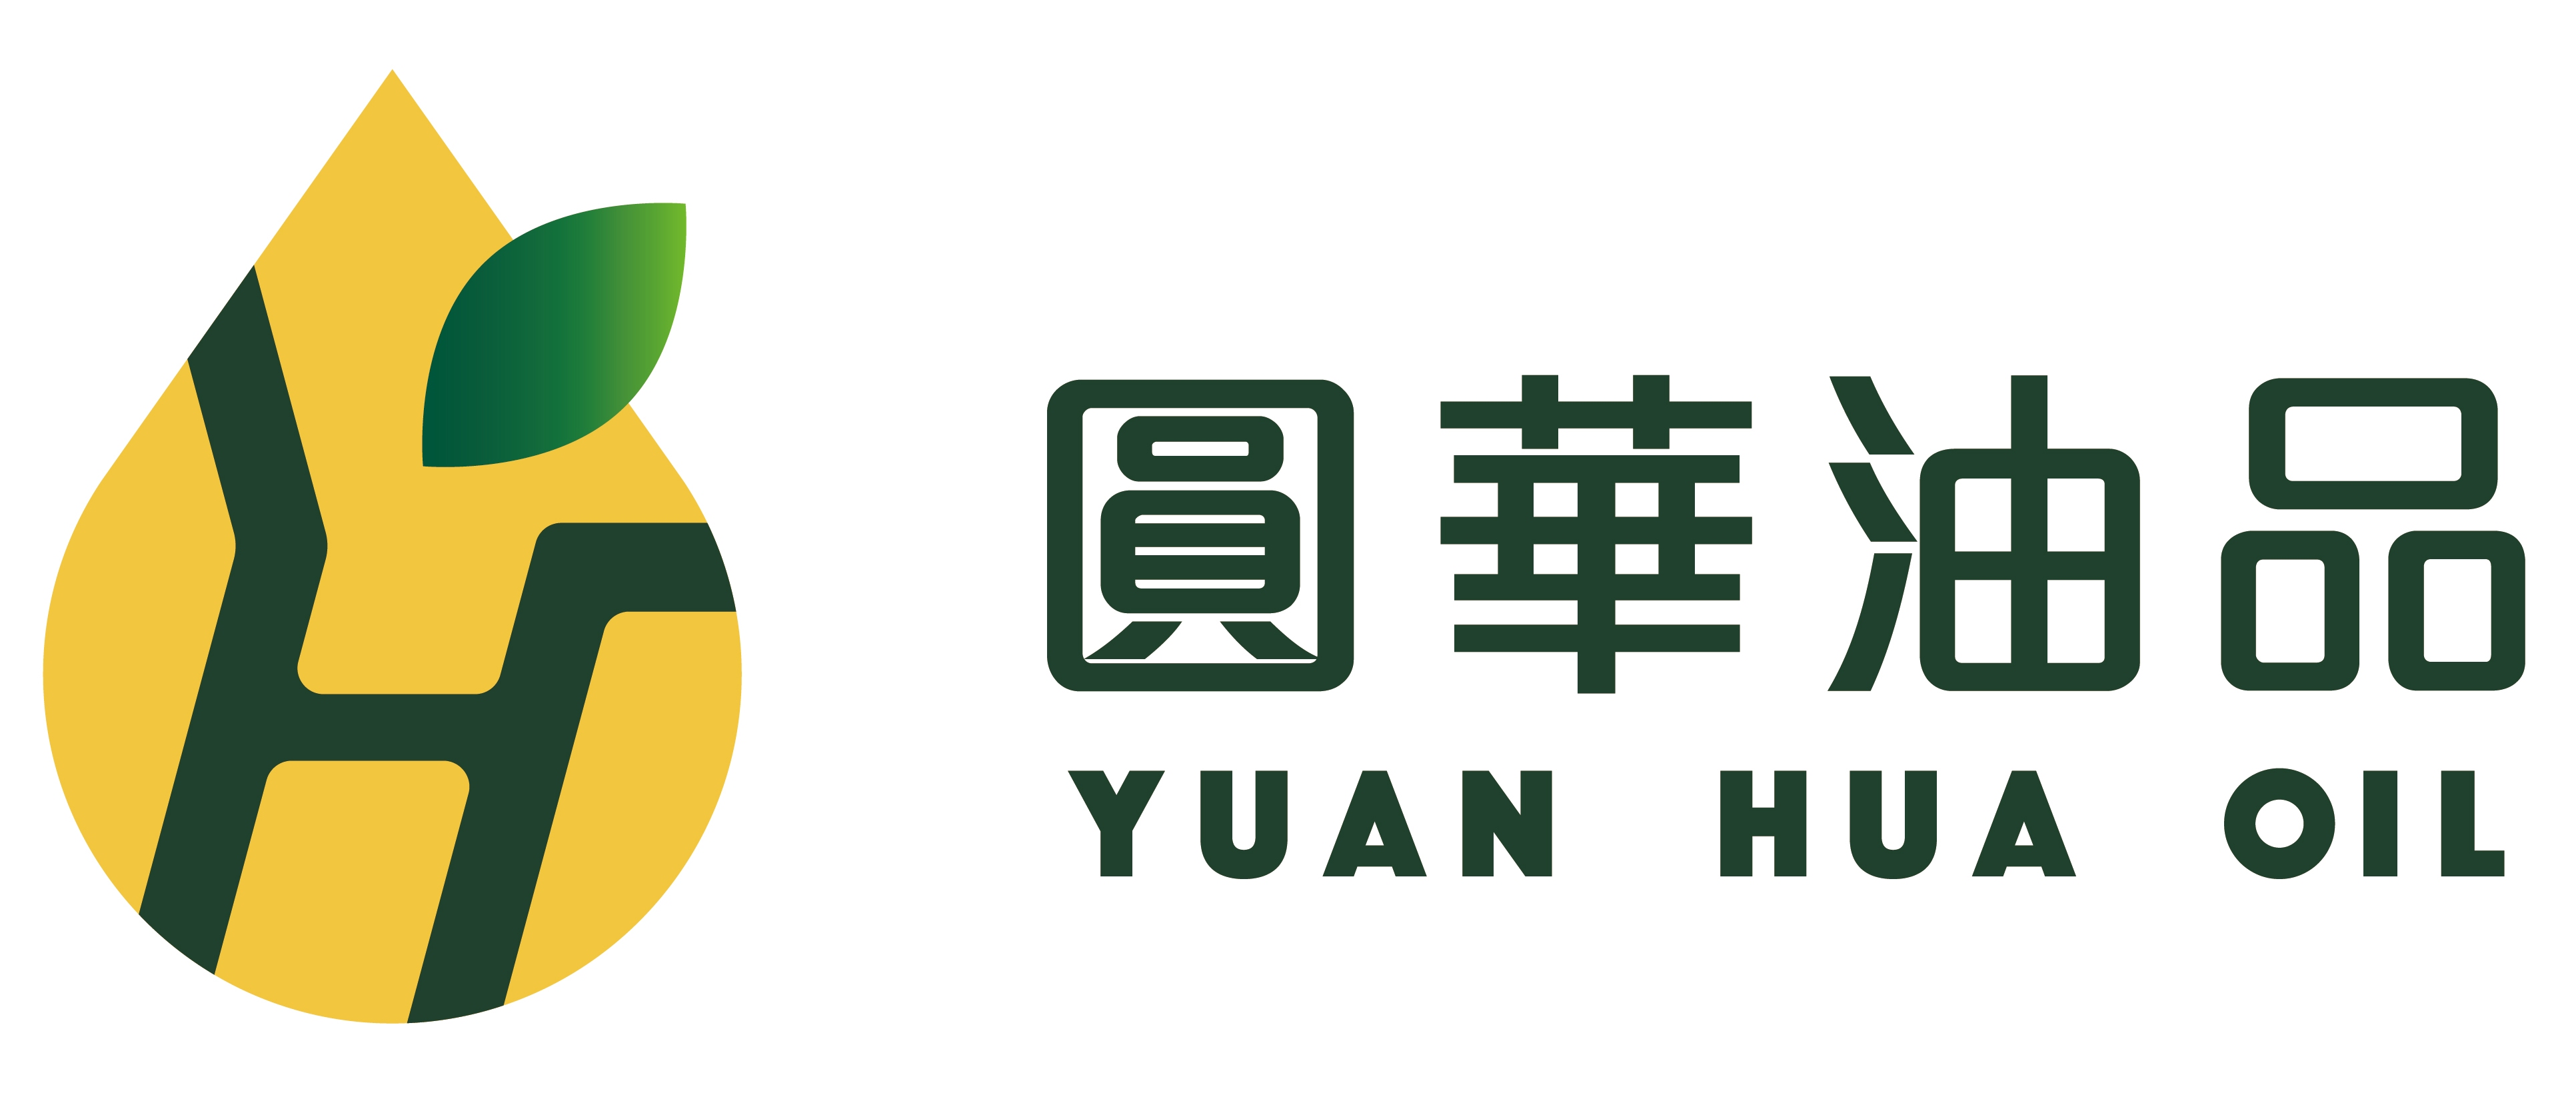 YUAN-HUA OIL ENTERPRISE COMPANY